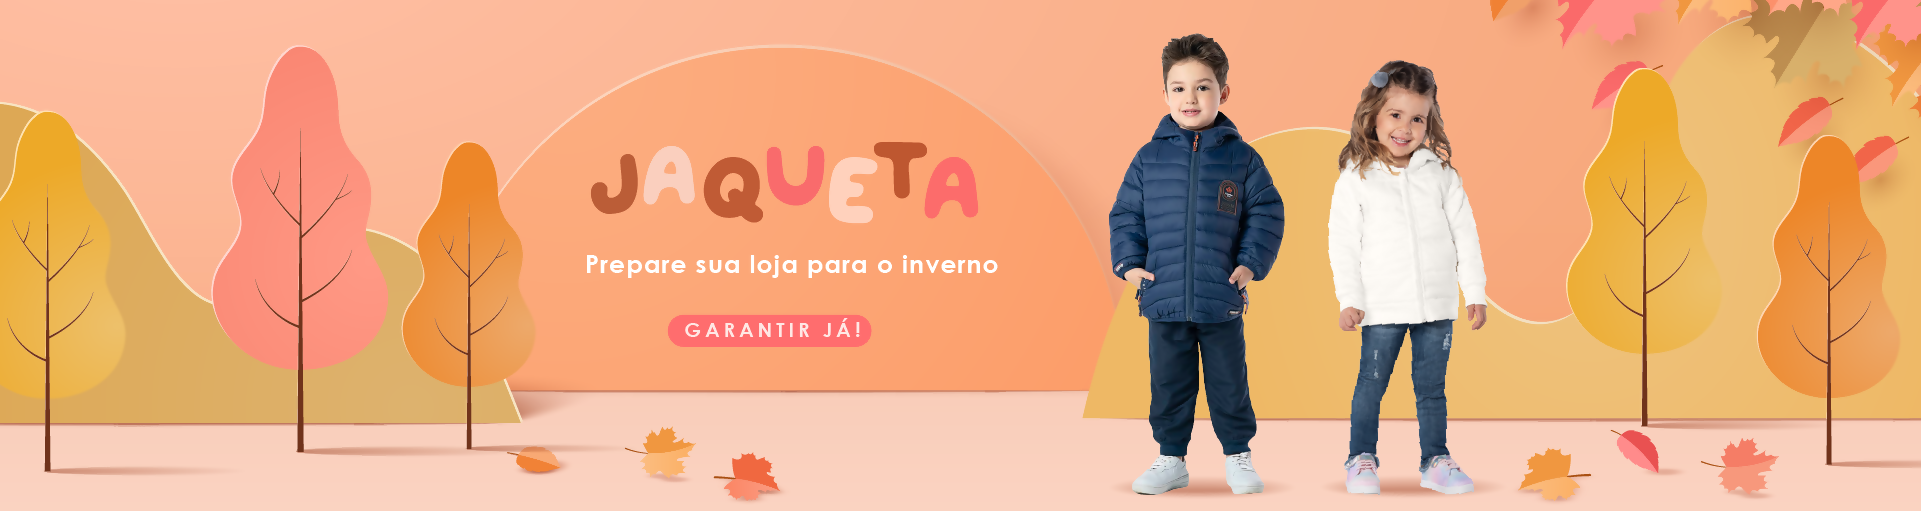 Jaqueta - Prepare sua loja para o inverno